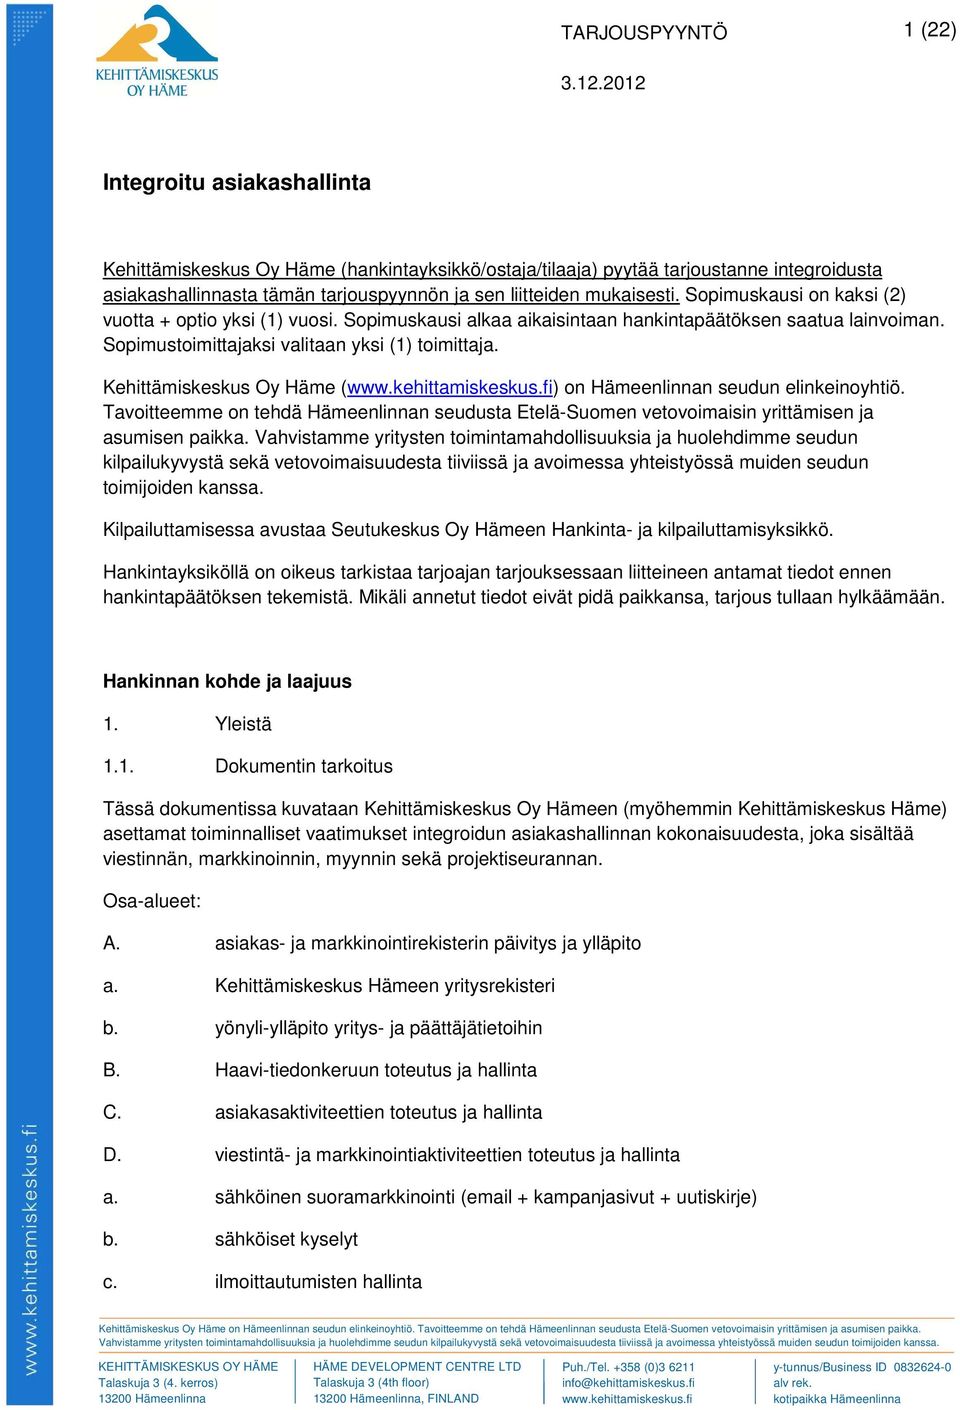 Kehittämiskeskus Oy Häme (www.kehittamiskeskus.fi) on Hämeenlinnan seudun elinkeinoyhtiö. Tavoitteemme on tehdä Hämeenlinnan seudusta Etelä-Suomen vetovoimaisin yrittämisen ja asumisen paikka.